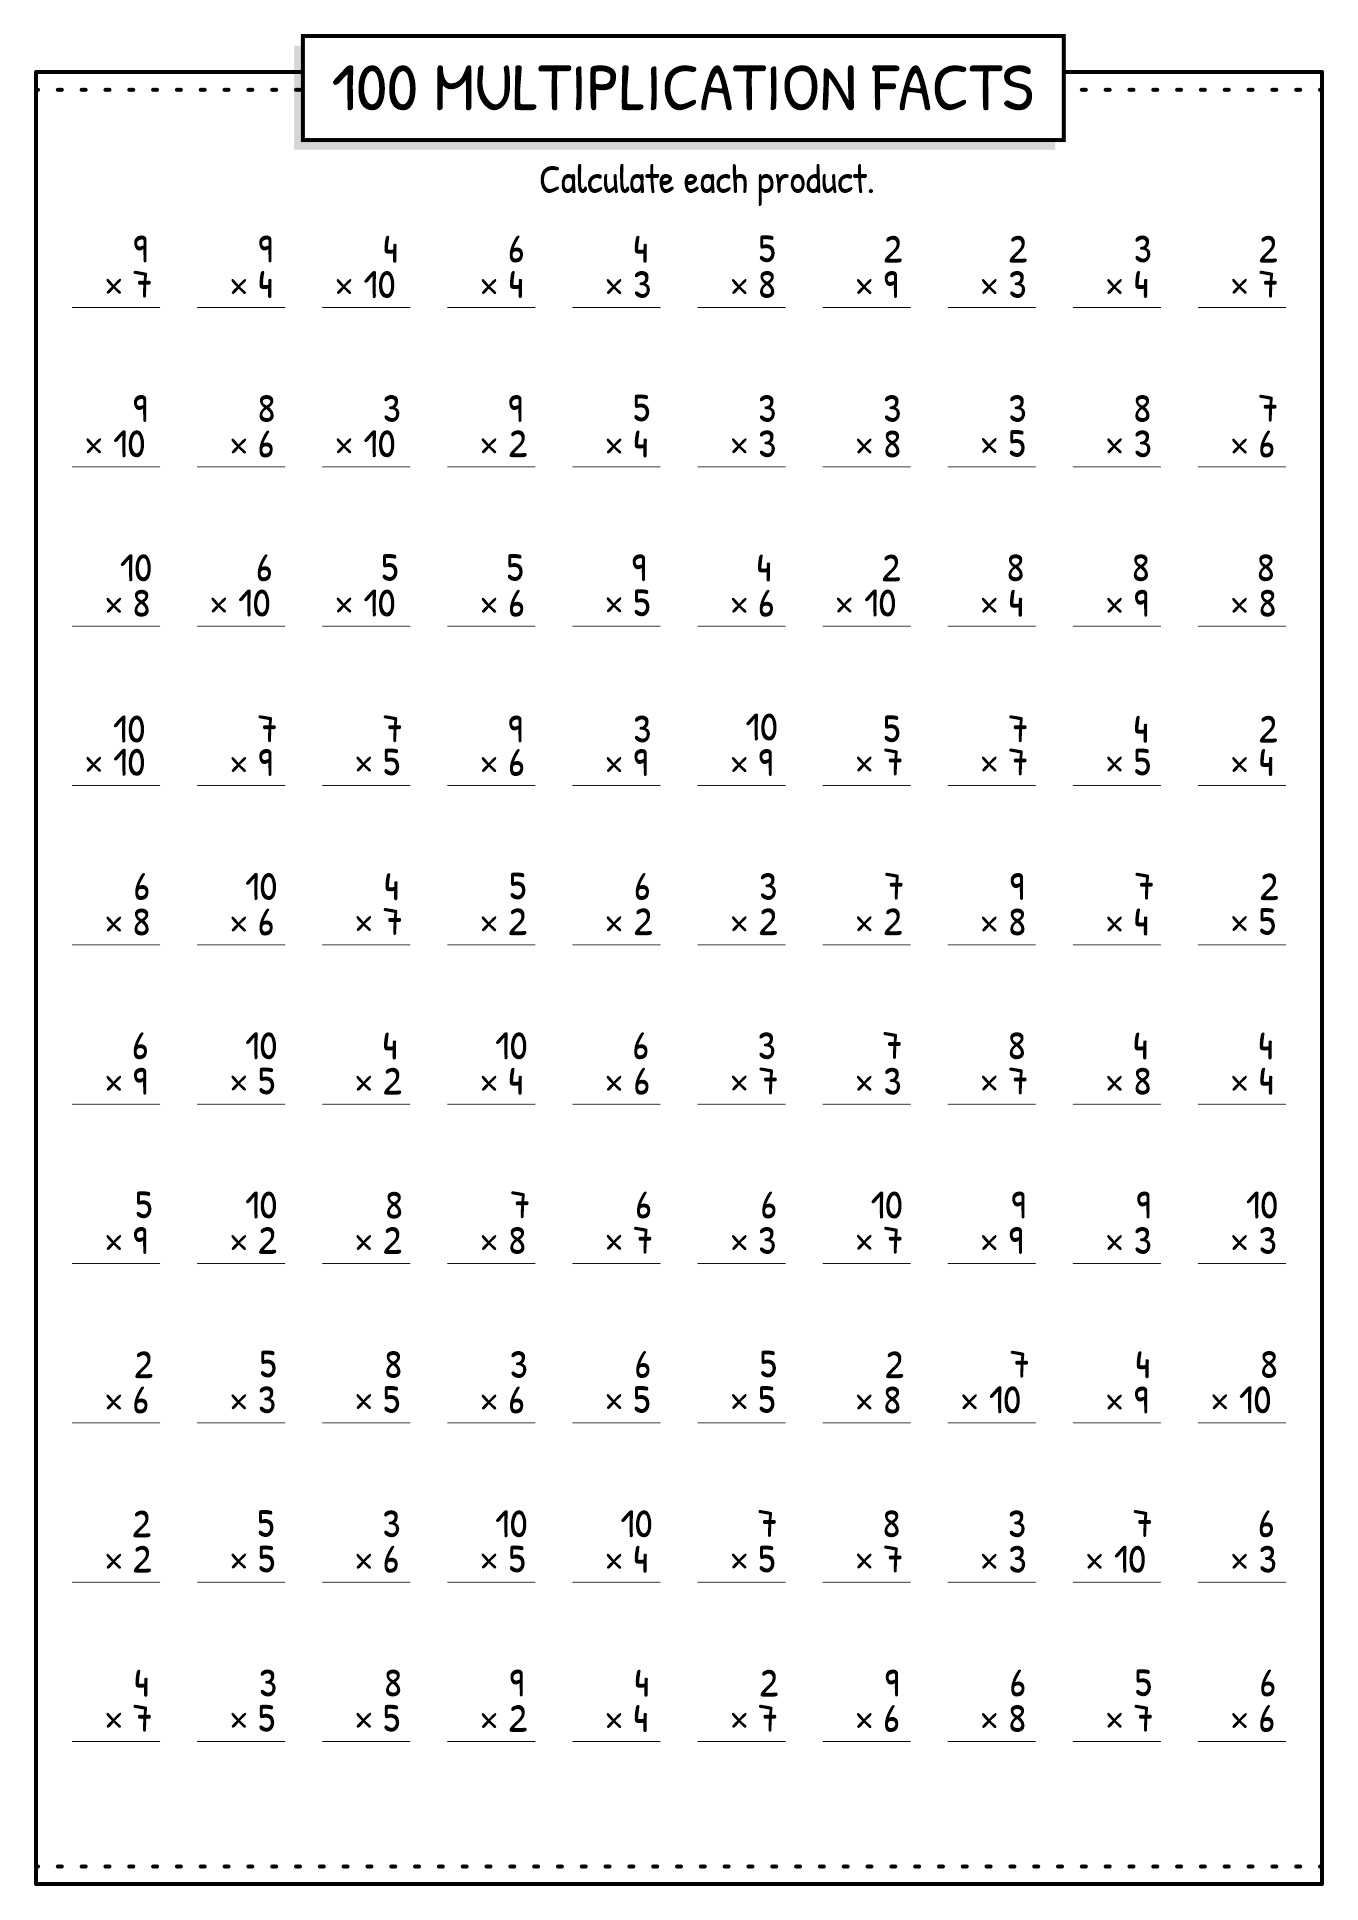 11 Best Images of Multiplication Worksheets 4S - 1 Multiplication